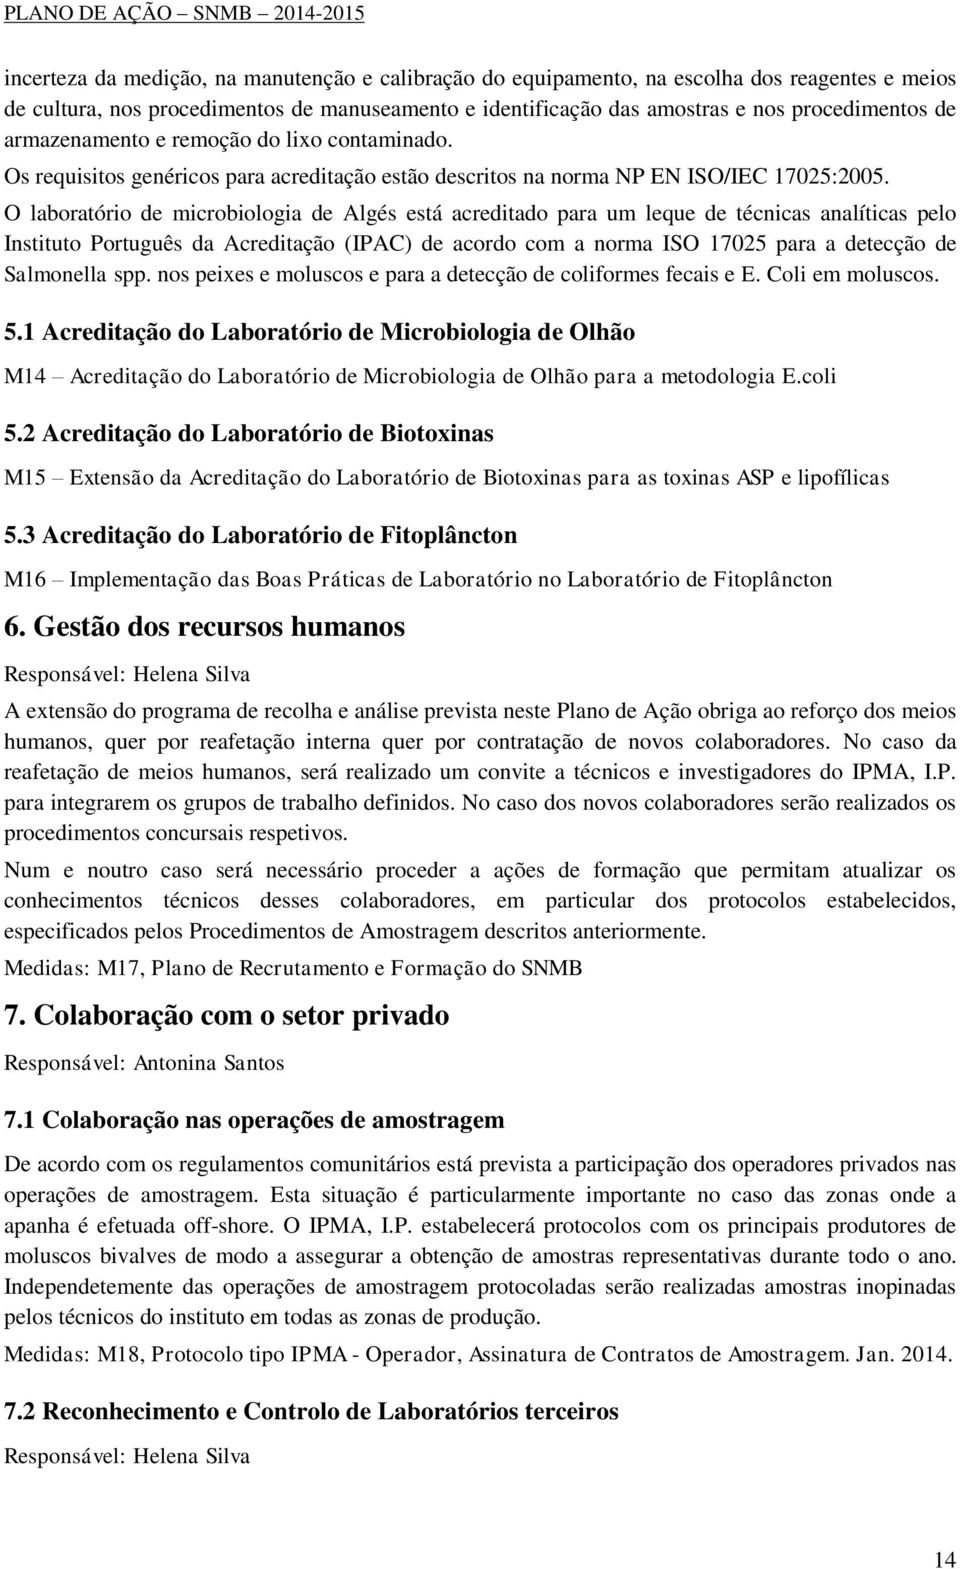 O laboratório de microbiologia de Algés está acreditado para um leque de técnicas analíticas pelo Instituto Português da Acreditação (IPAC) de acordo com a norma ISO 17025 para a detecção de